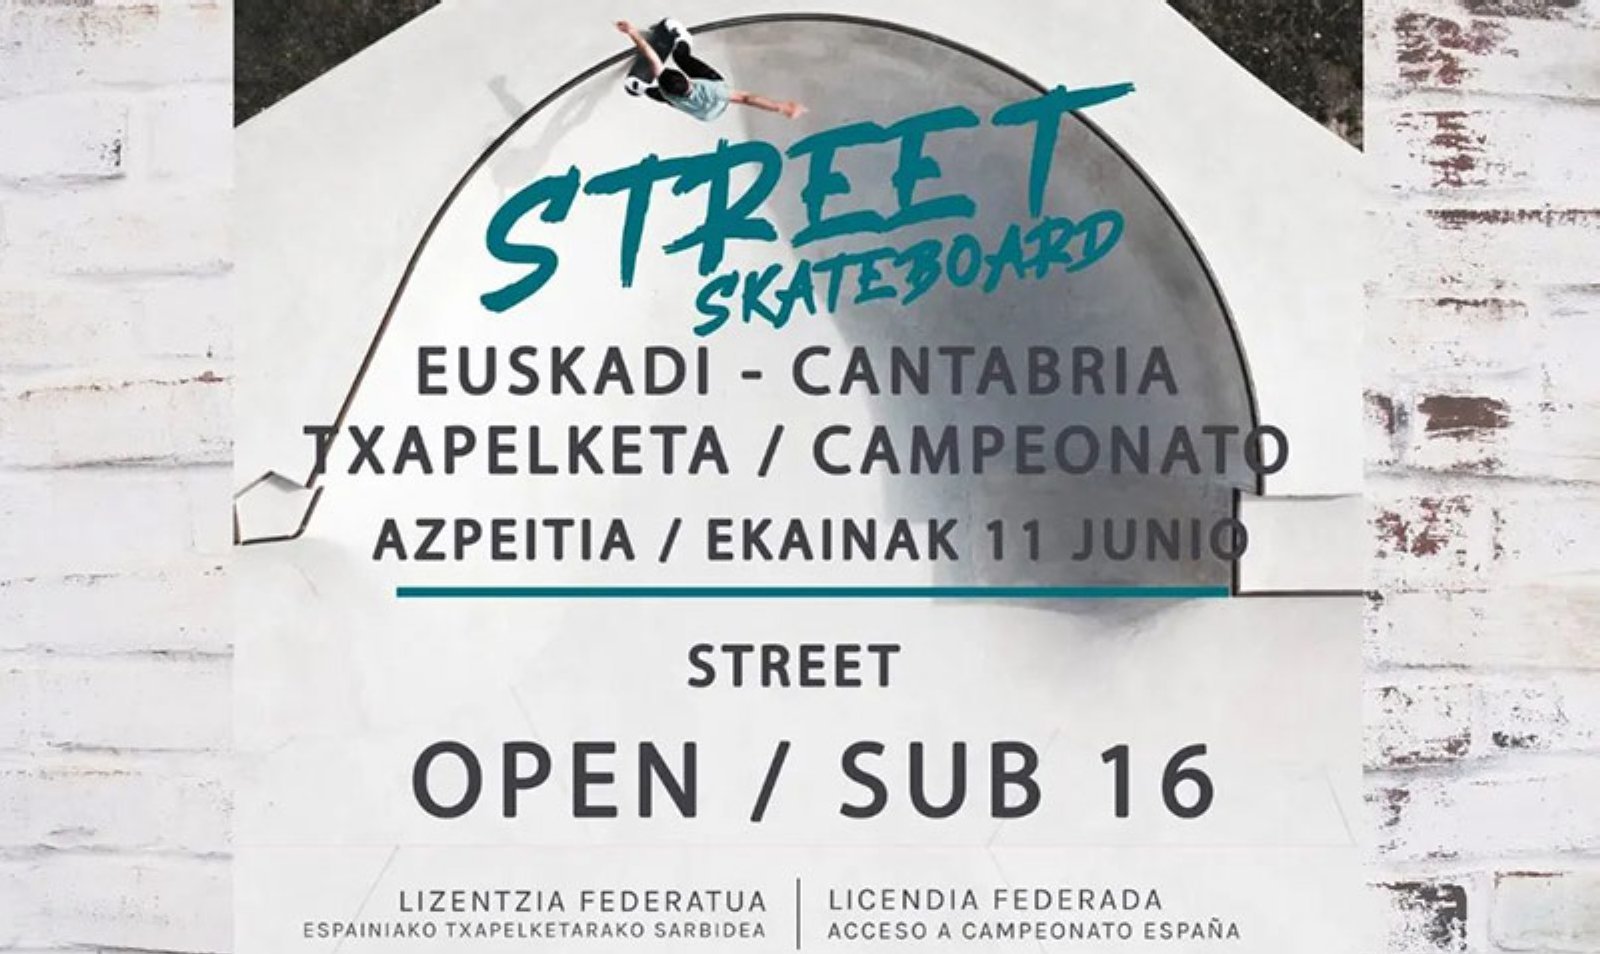 Campeonato de Skateboard en Azpeitia